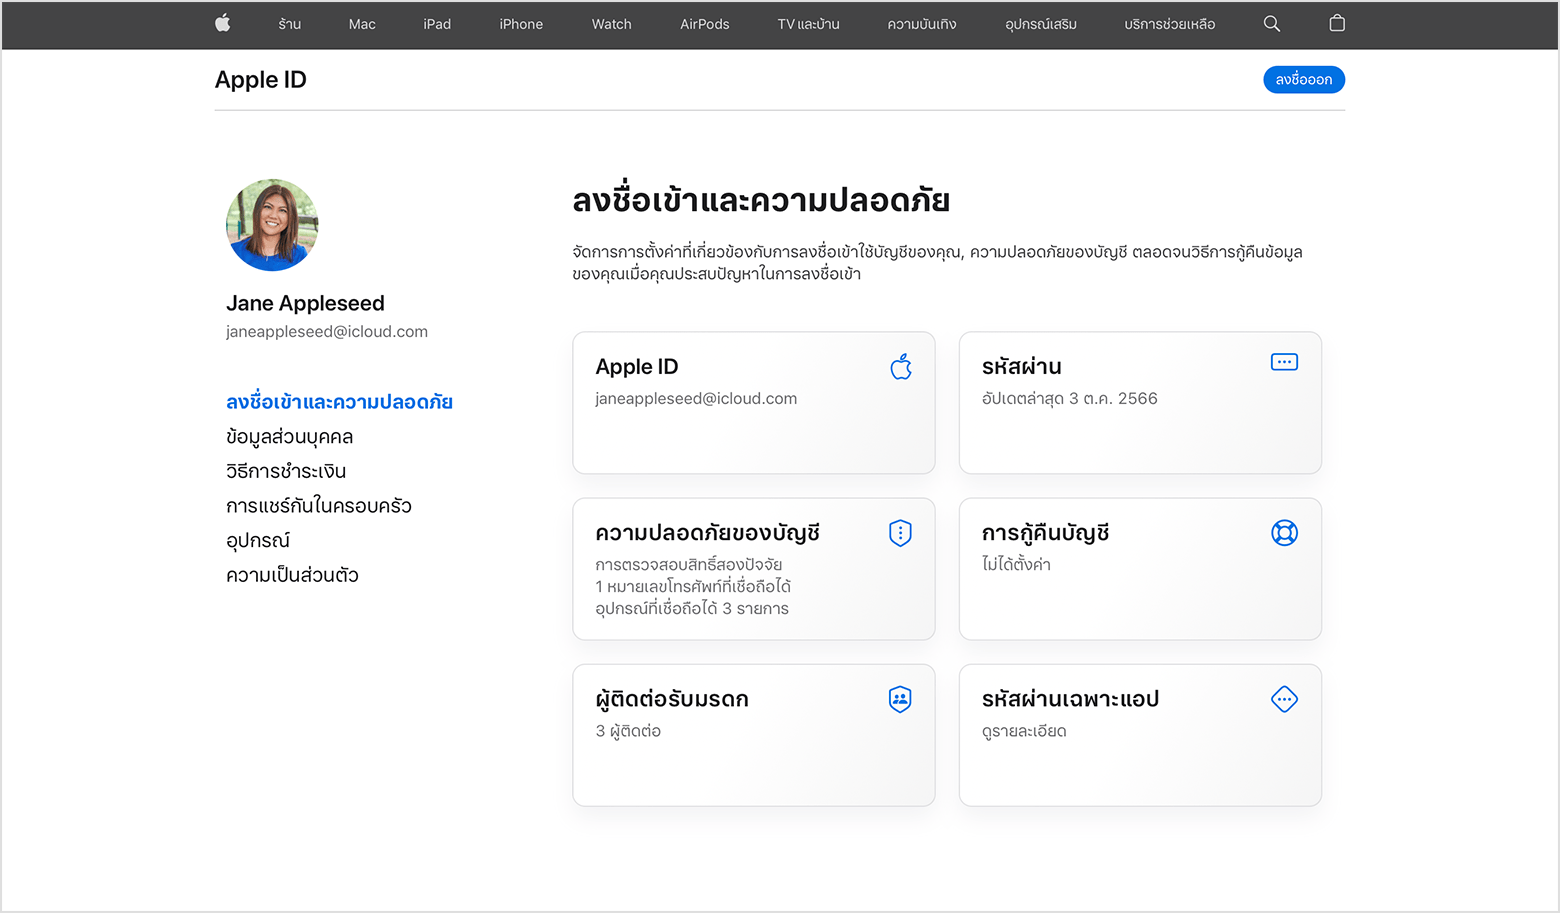 หน้าจอแสดงวิธีเปลี่ยนรหัสผ่าน Apple ID บนเว็บ